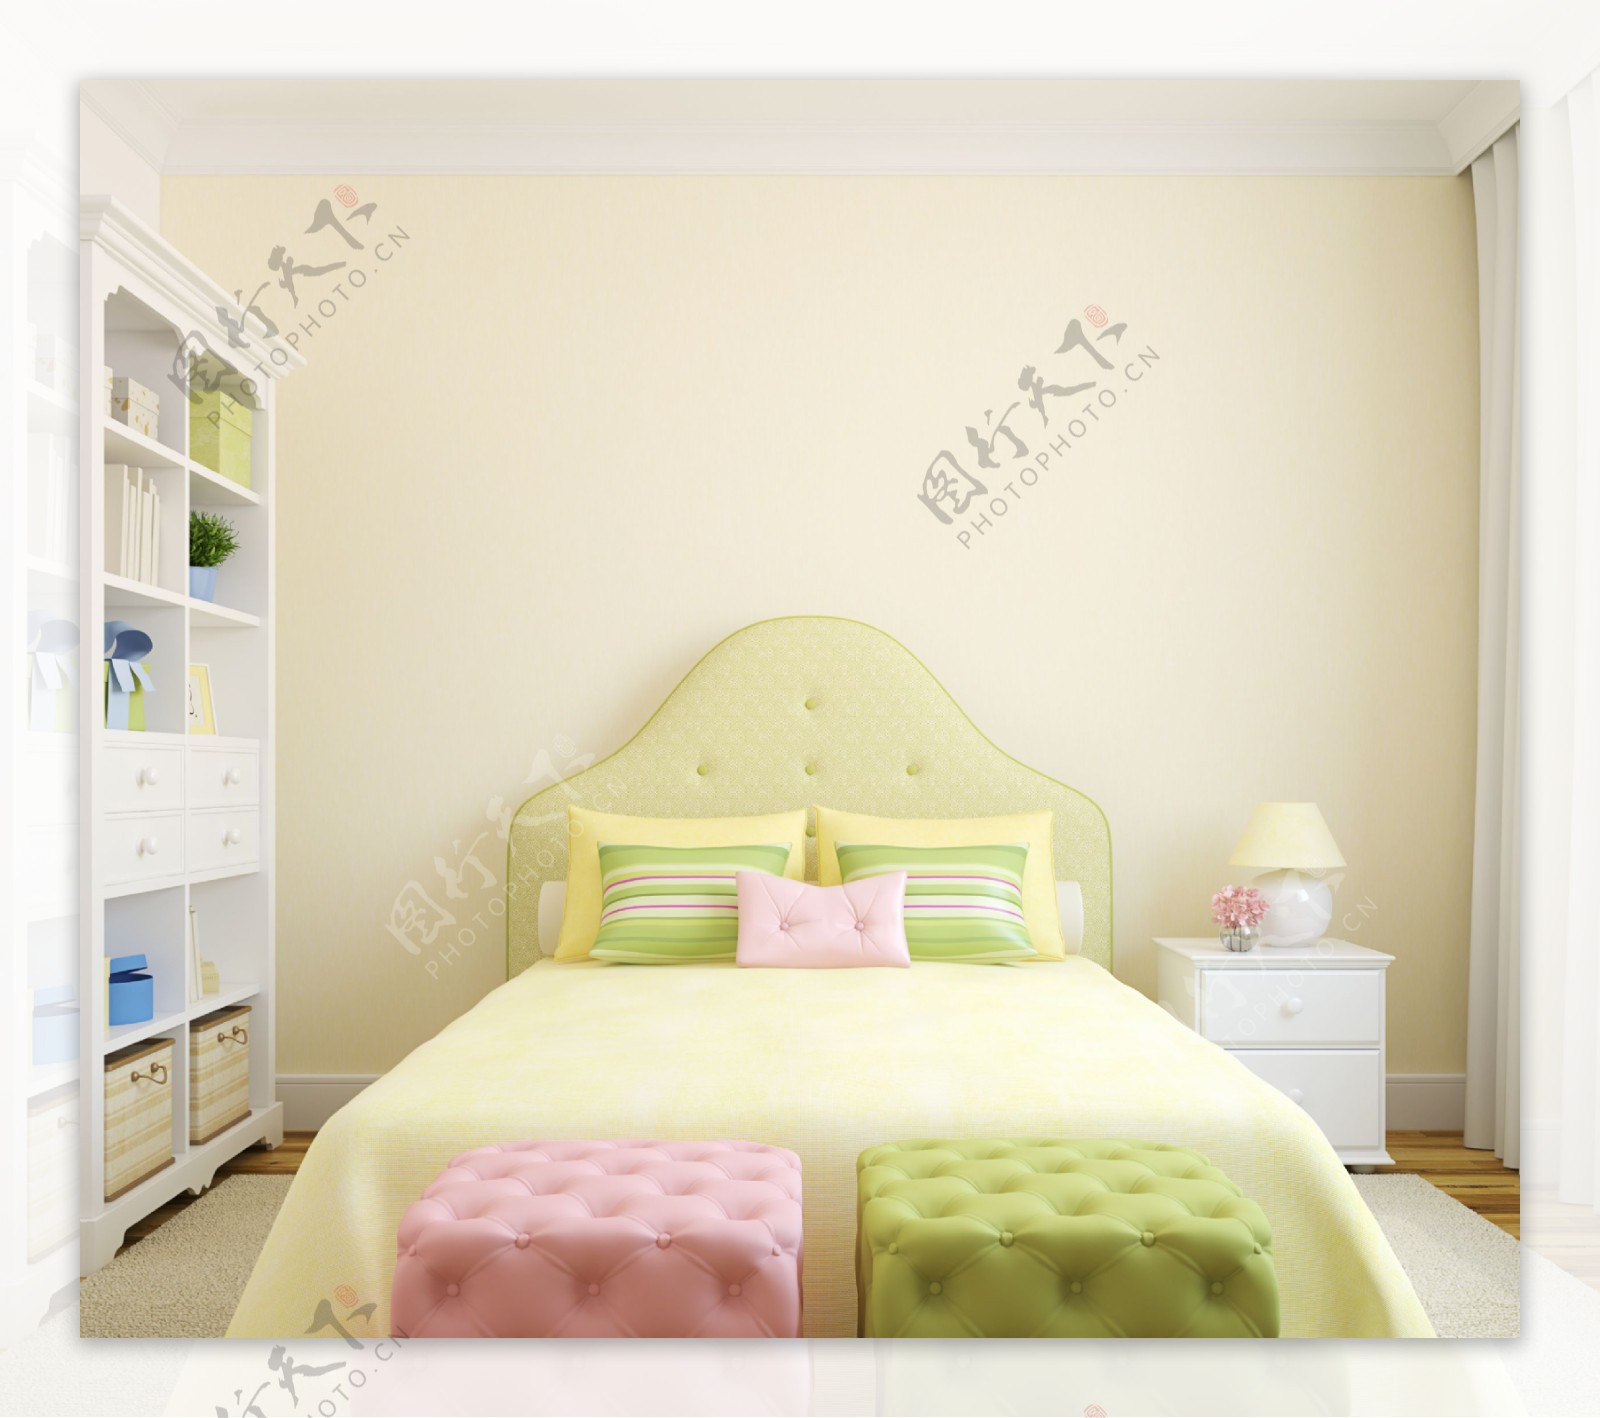 绿色清新卧室效果图